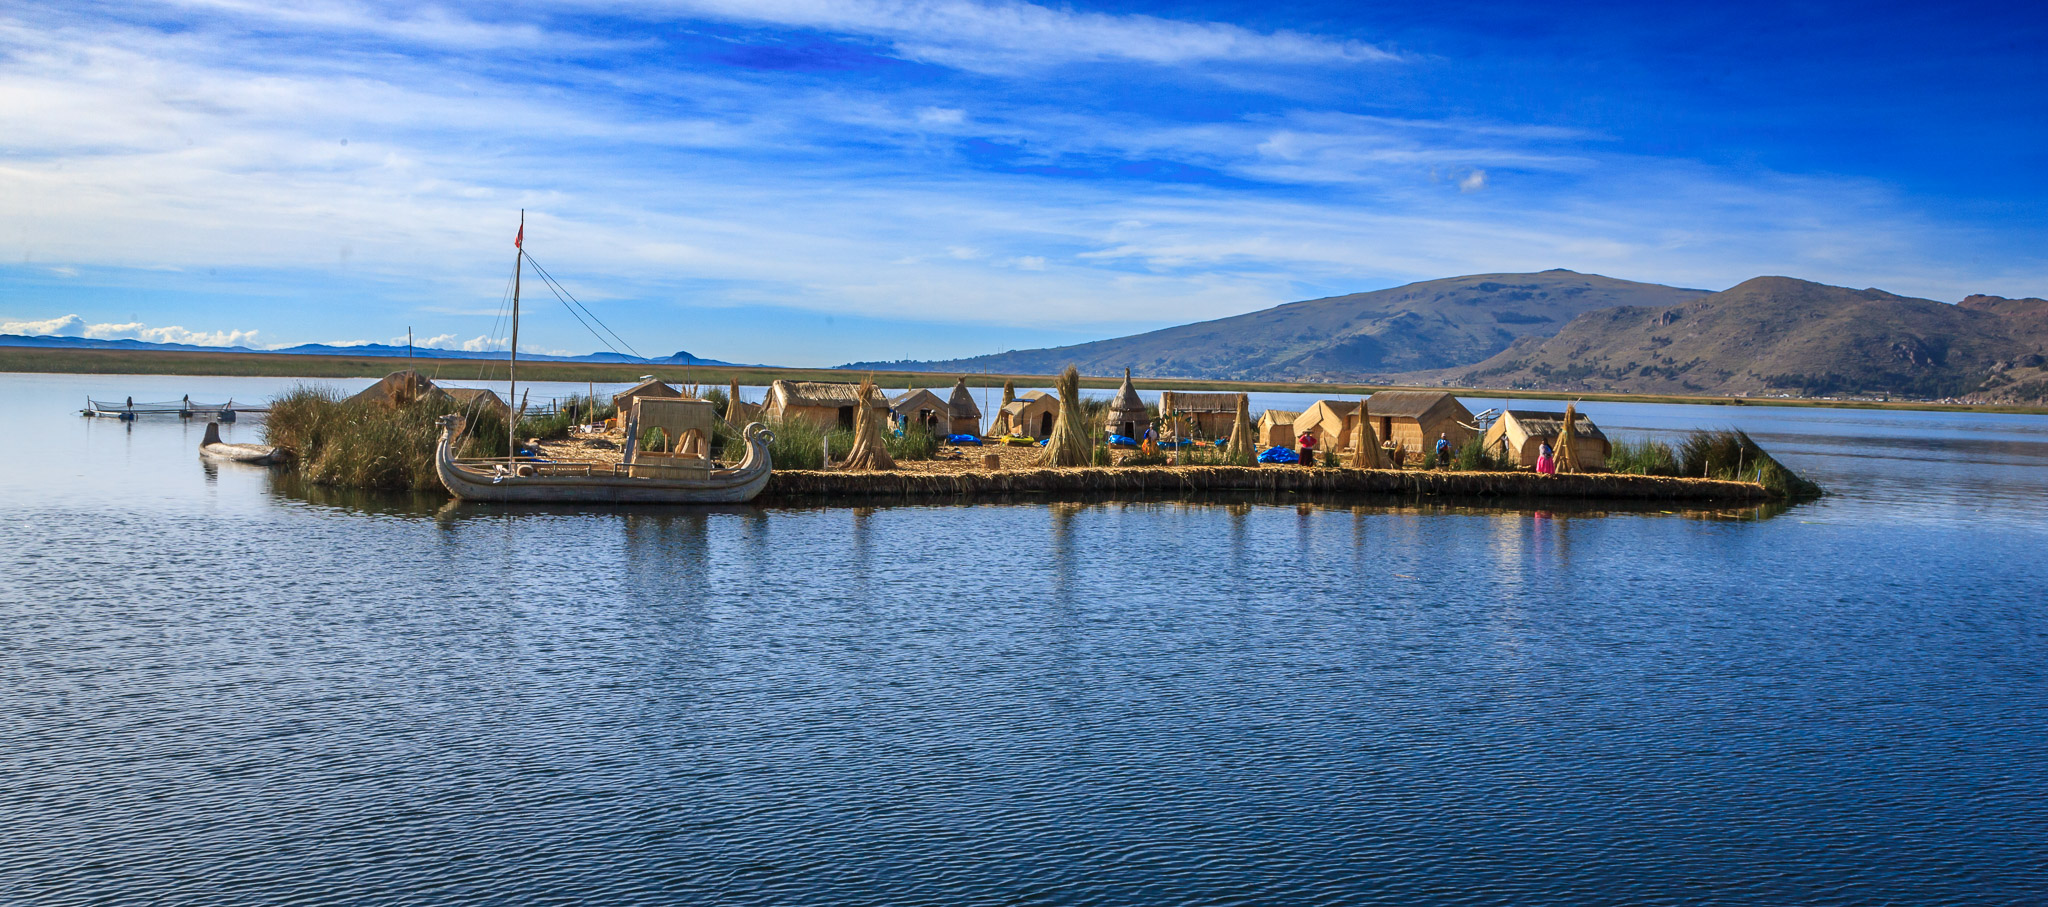 Los Uros - Gaviota floating reed islands in Lake Titicaca